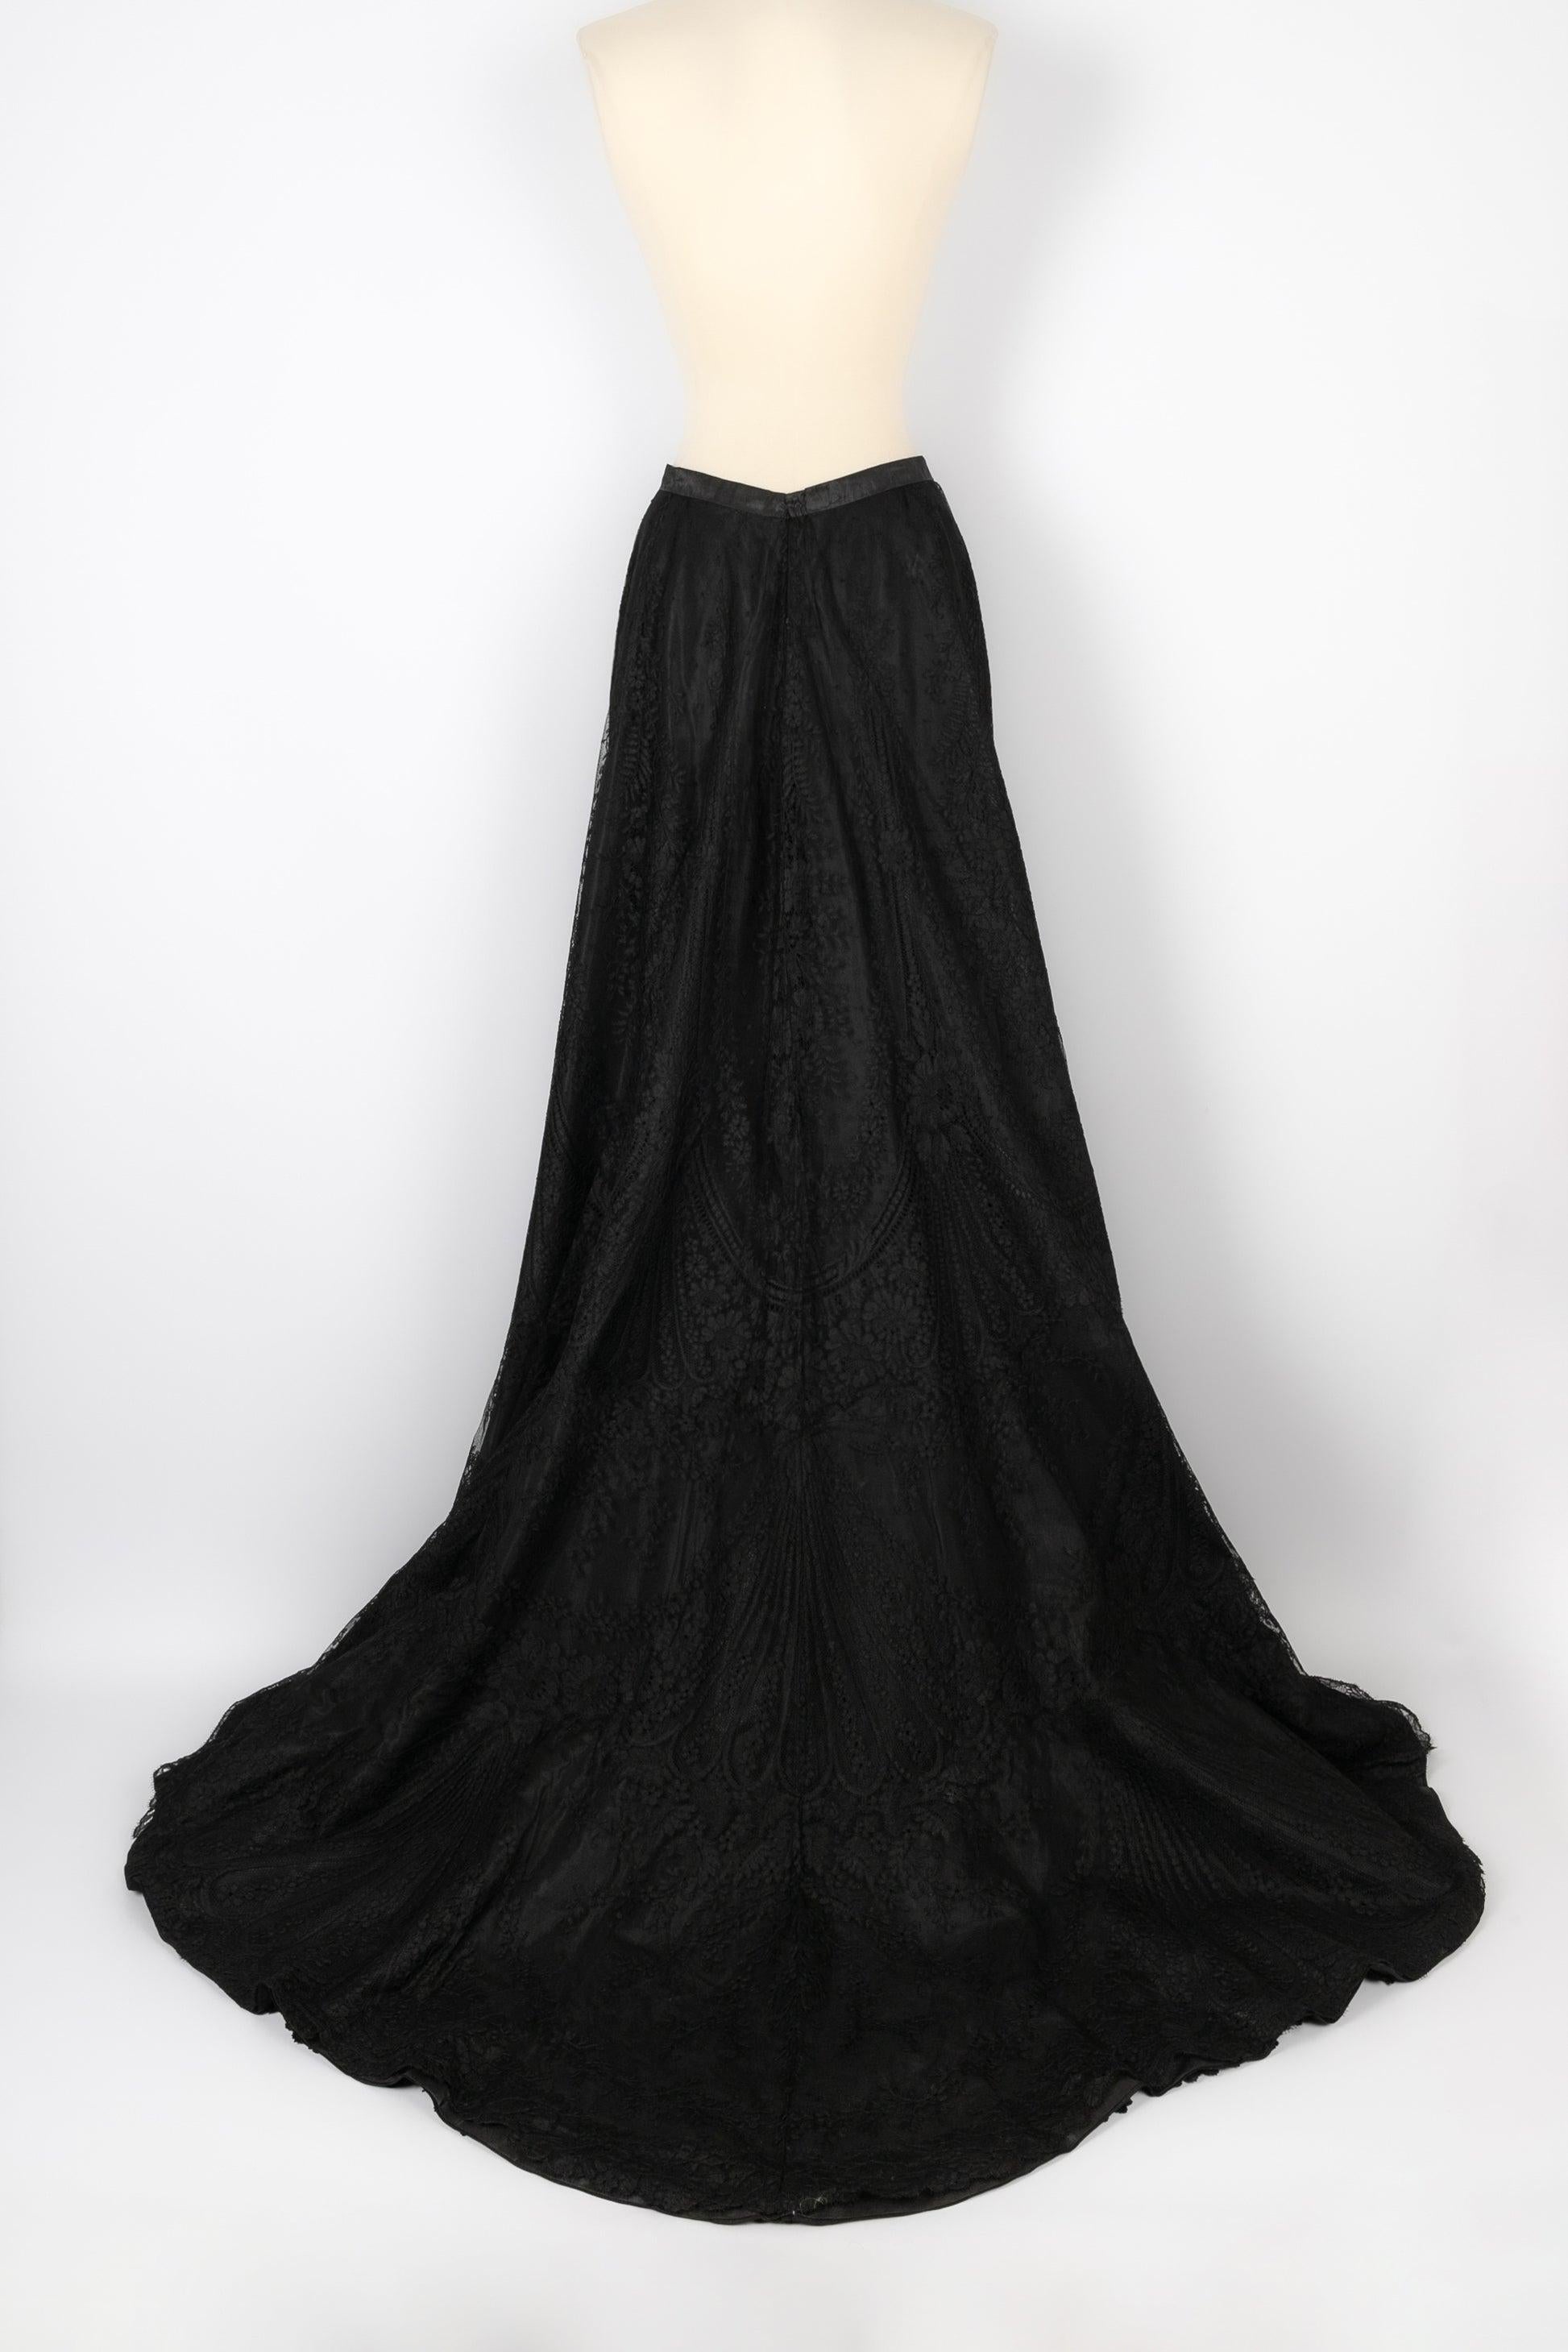 Long Asymmetrical Black Lace Skirt In Excellent Condition For Sale In SAINT-OUEN-SUR-SEINE, FR